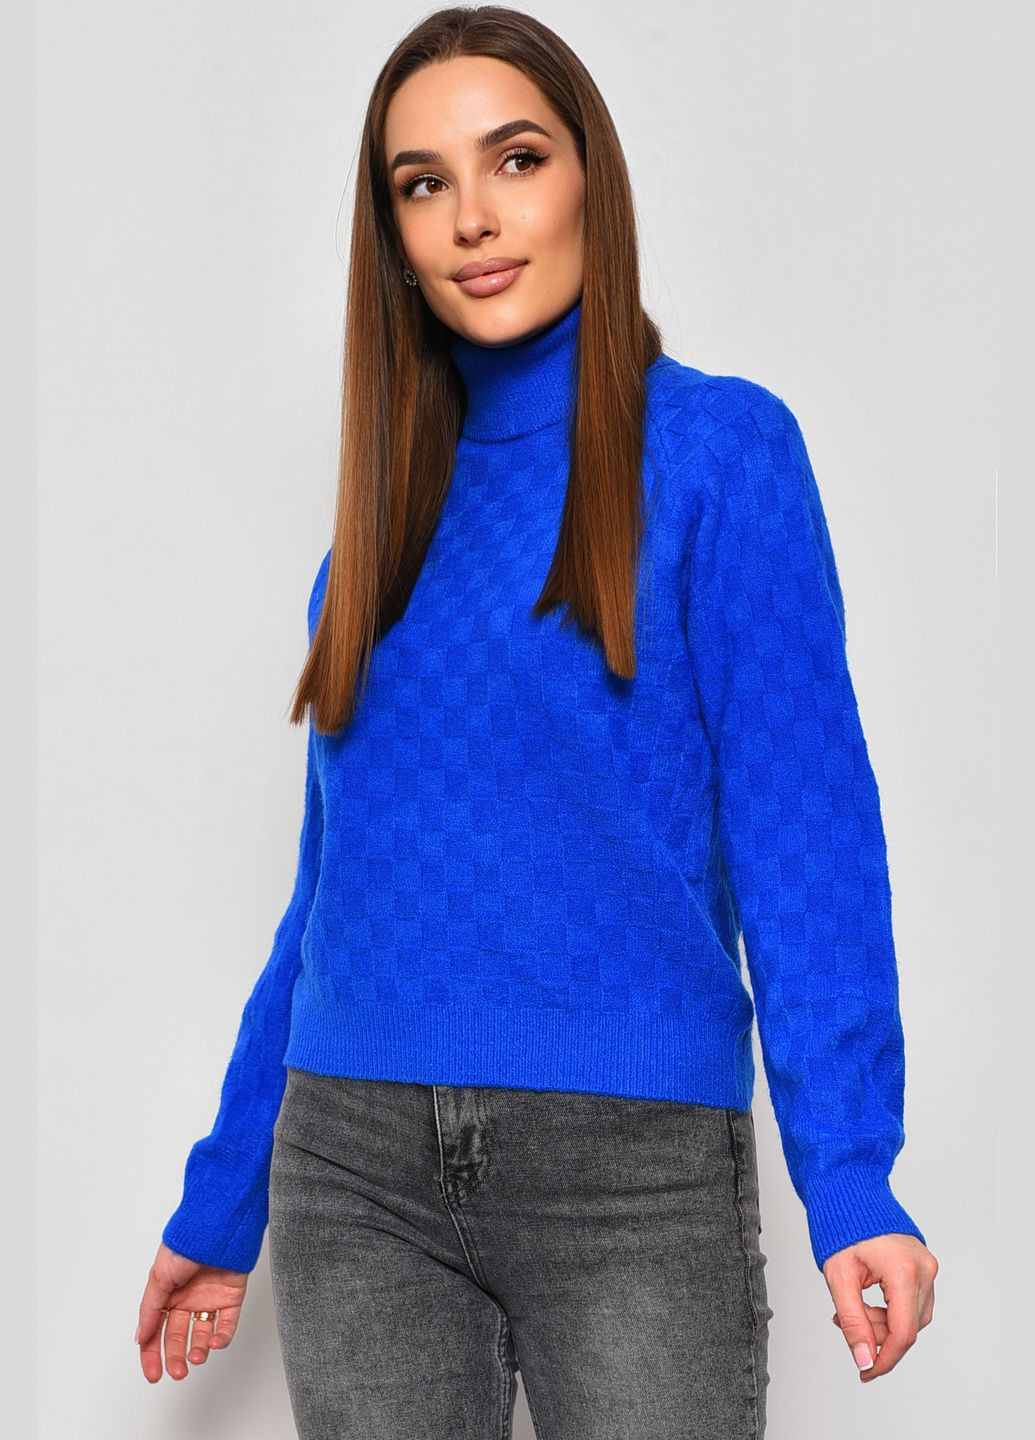 Синий зимний свитер женский синего цвета пуловер Let's Shop